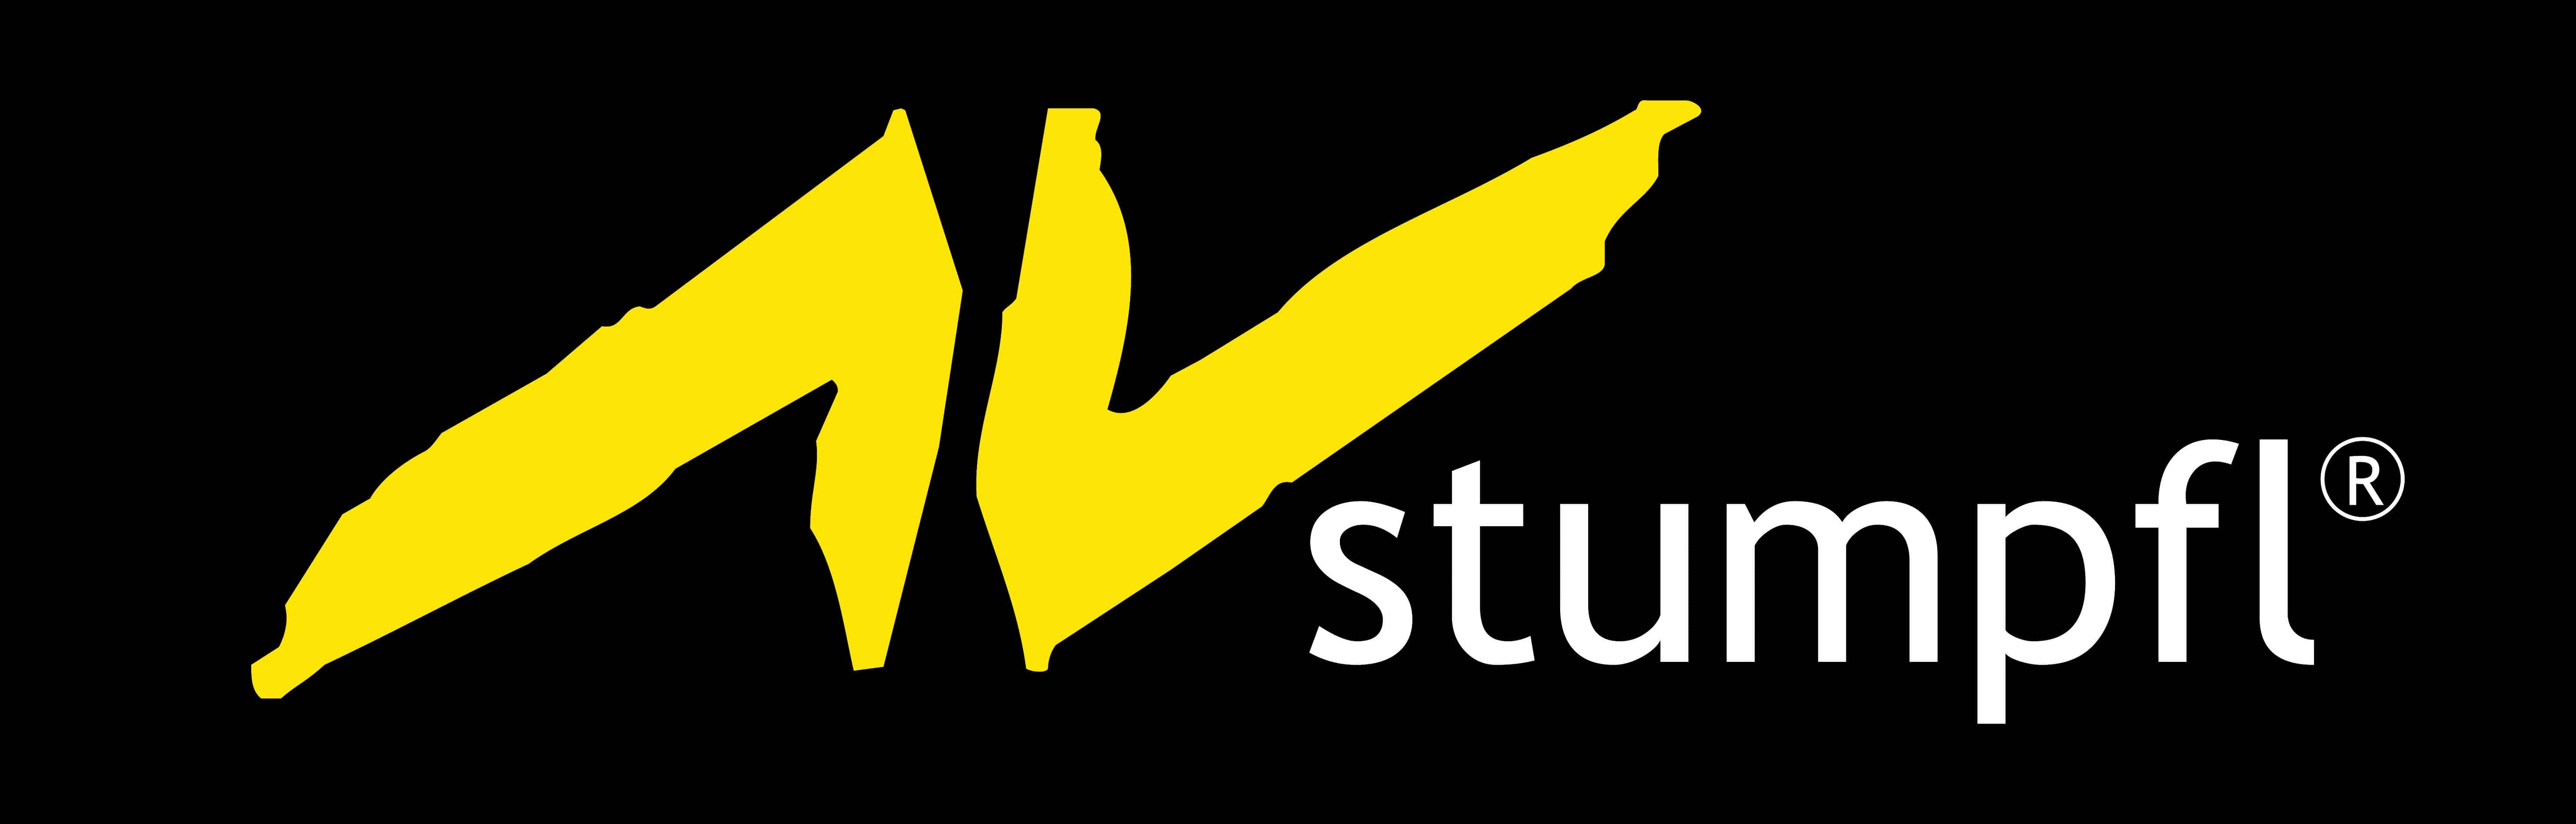 Logog: AV Stumpfl - Medientechnik, Leinwänden